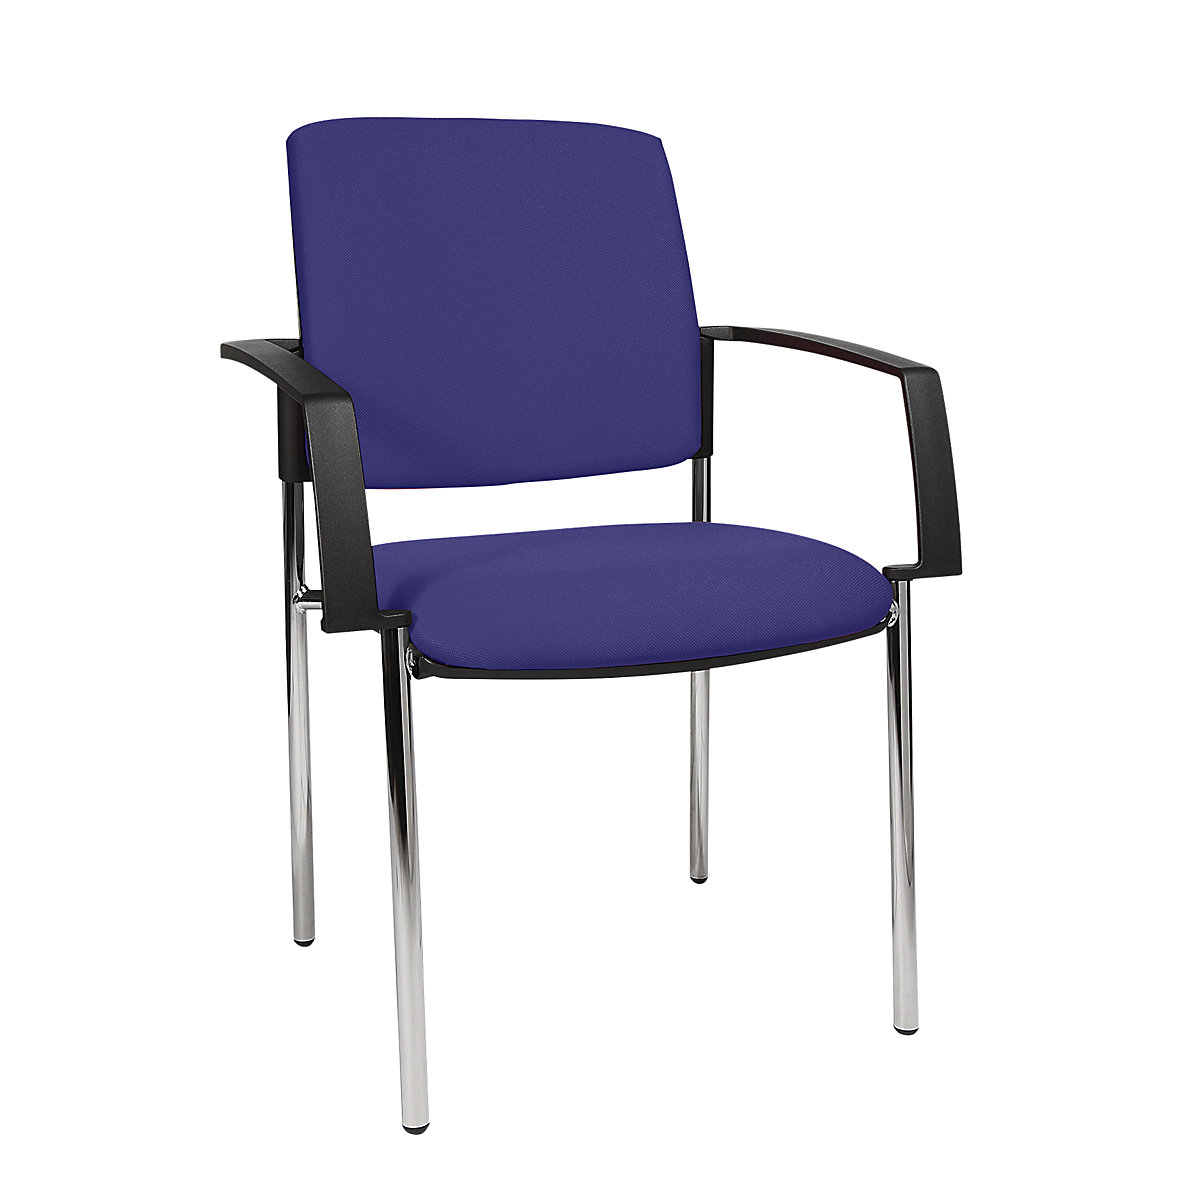 Čalúnená stohovacia stolička – Topstar, podstavec so štyrmi nohami, OJ 2 ks, podstavec pochrómovaný, čalúnenie modrá-3